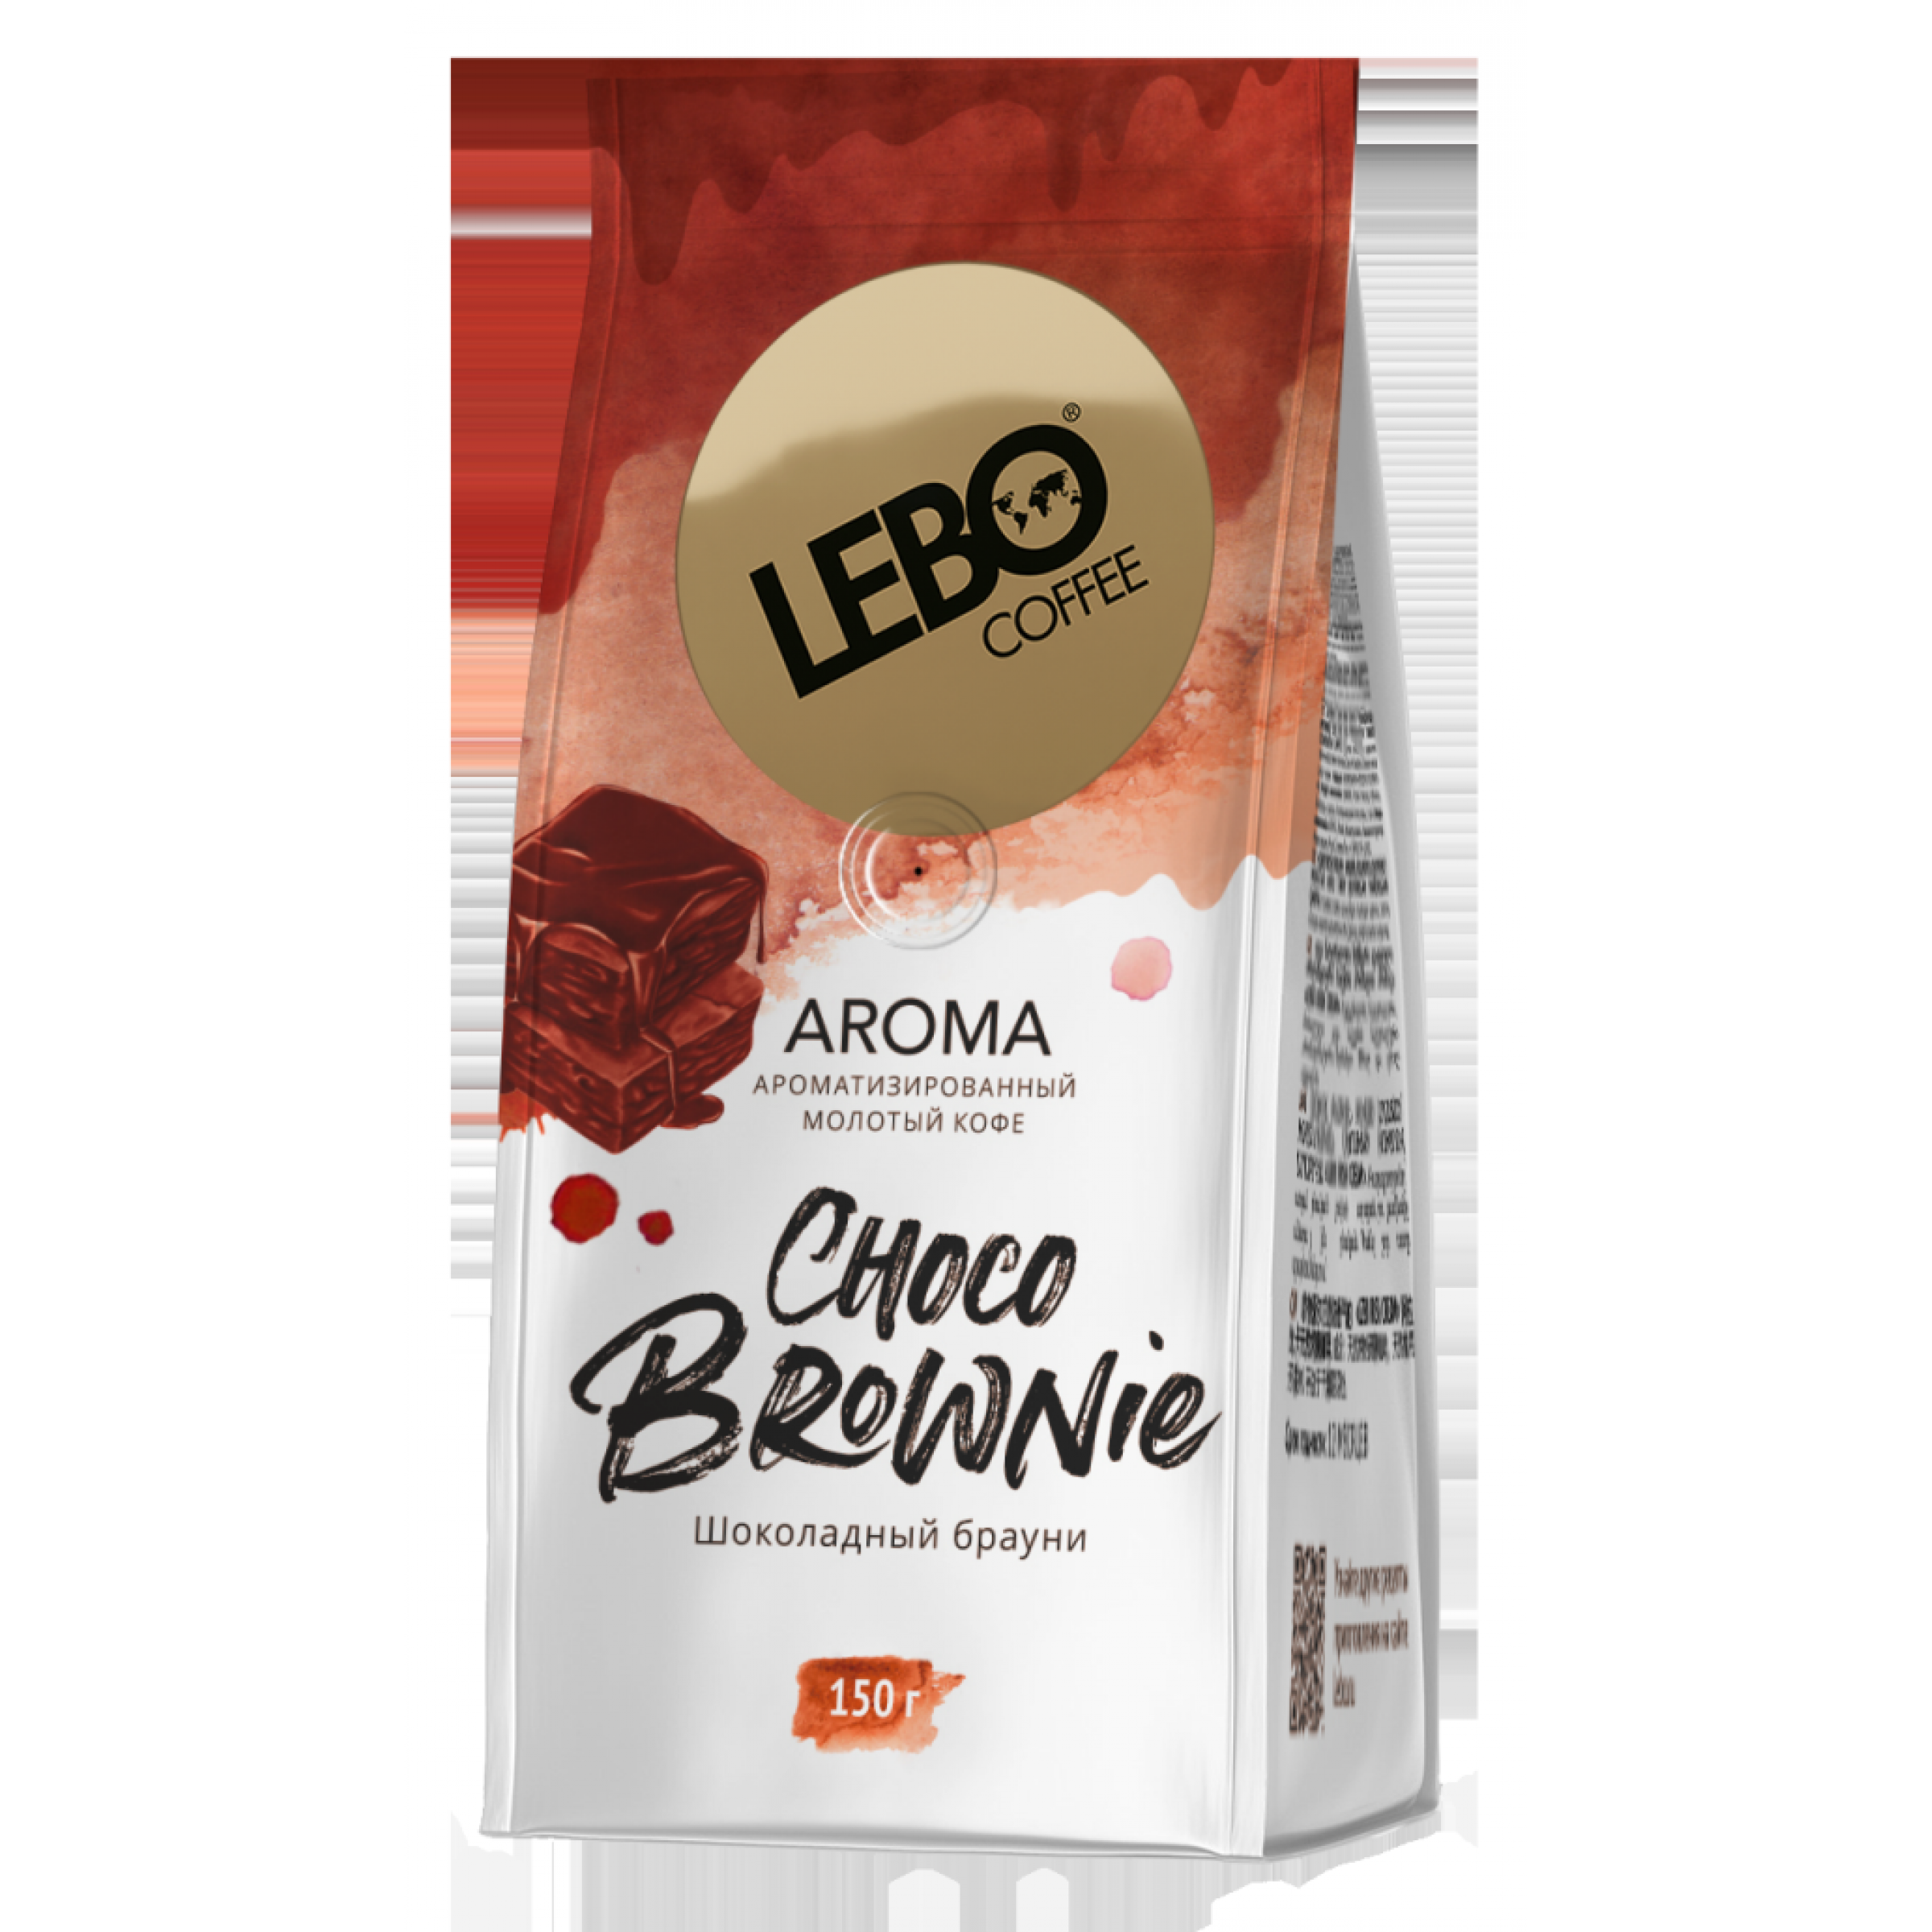 Ароматизированный молотый кофе Lebo Aroma Choco Brownie 150 г